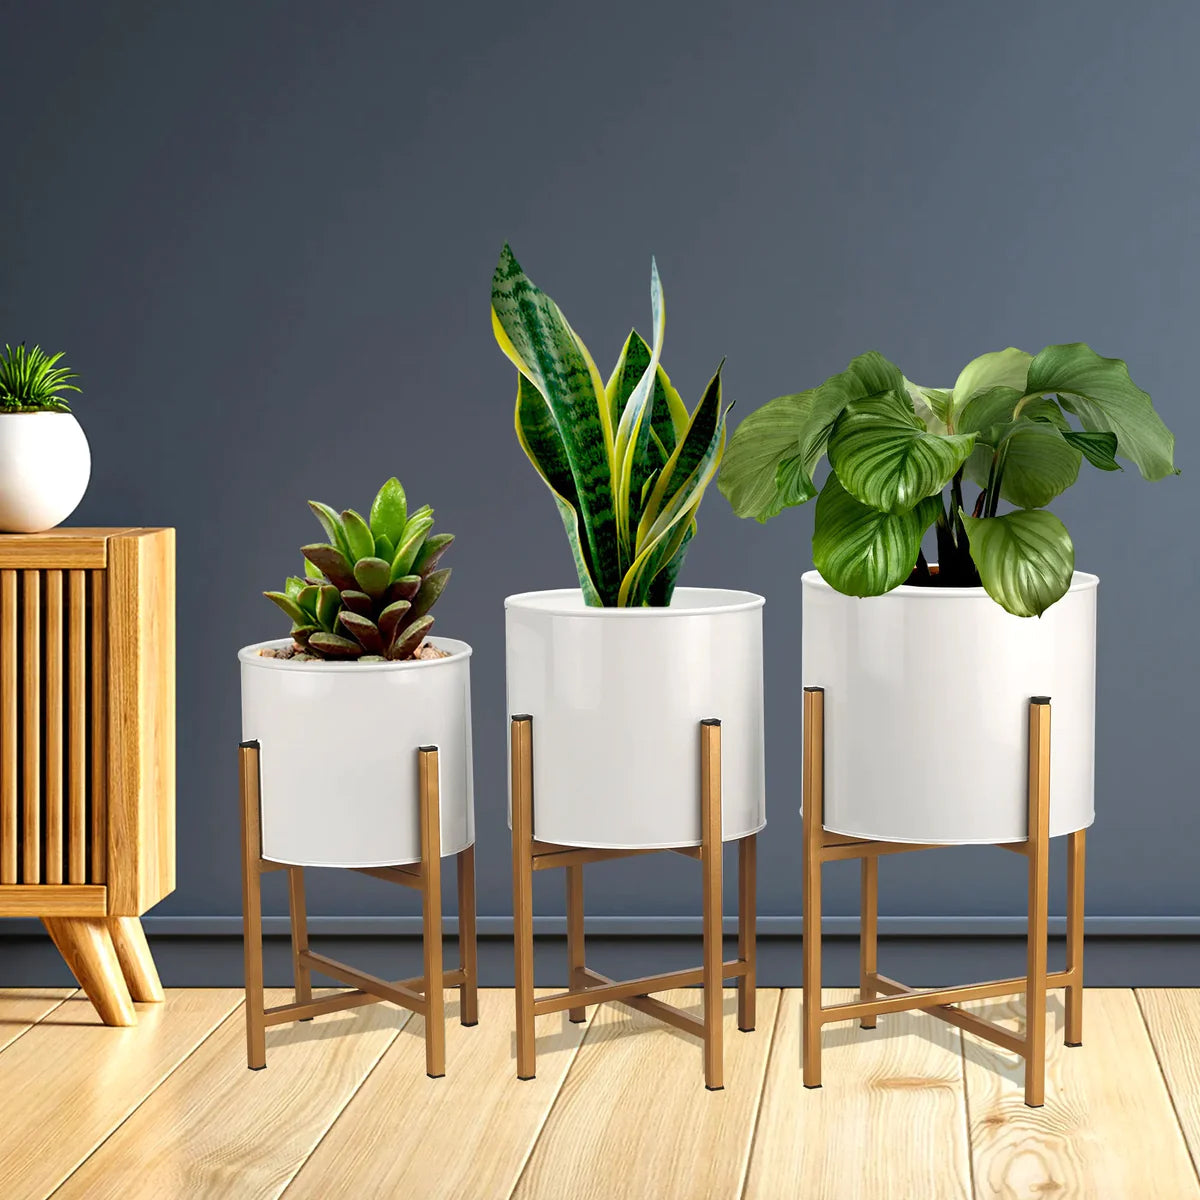 Casa De Amor Decorative Planters for Best for Indoor Plants, Living Room, Bedroom, Balcony (Set of 3)